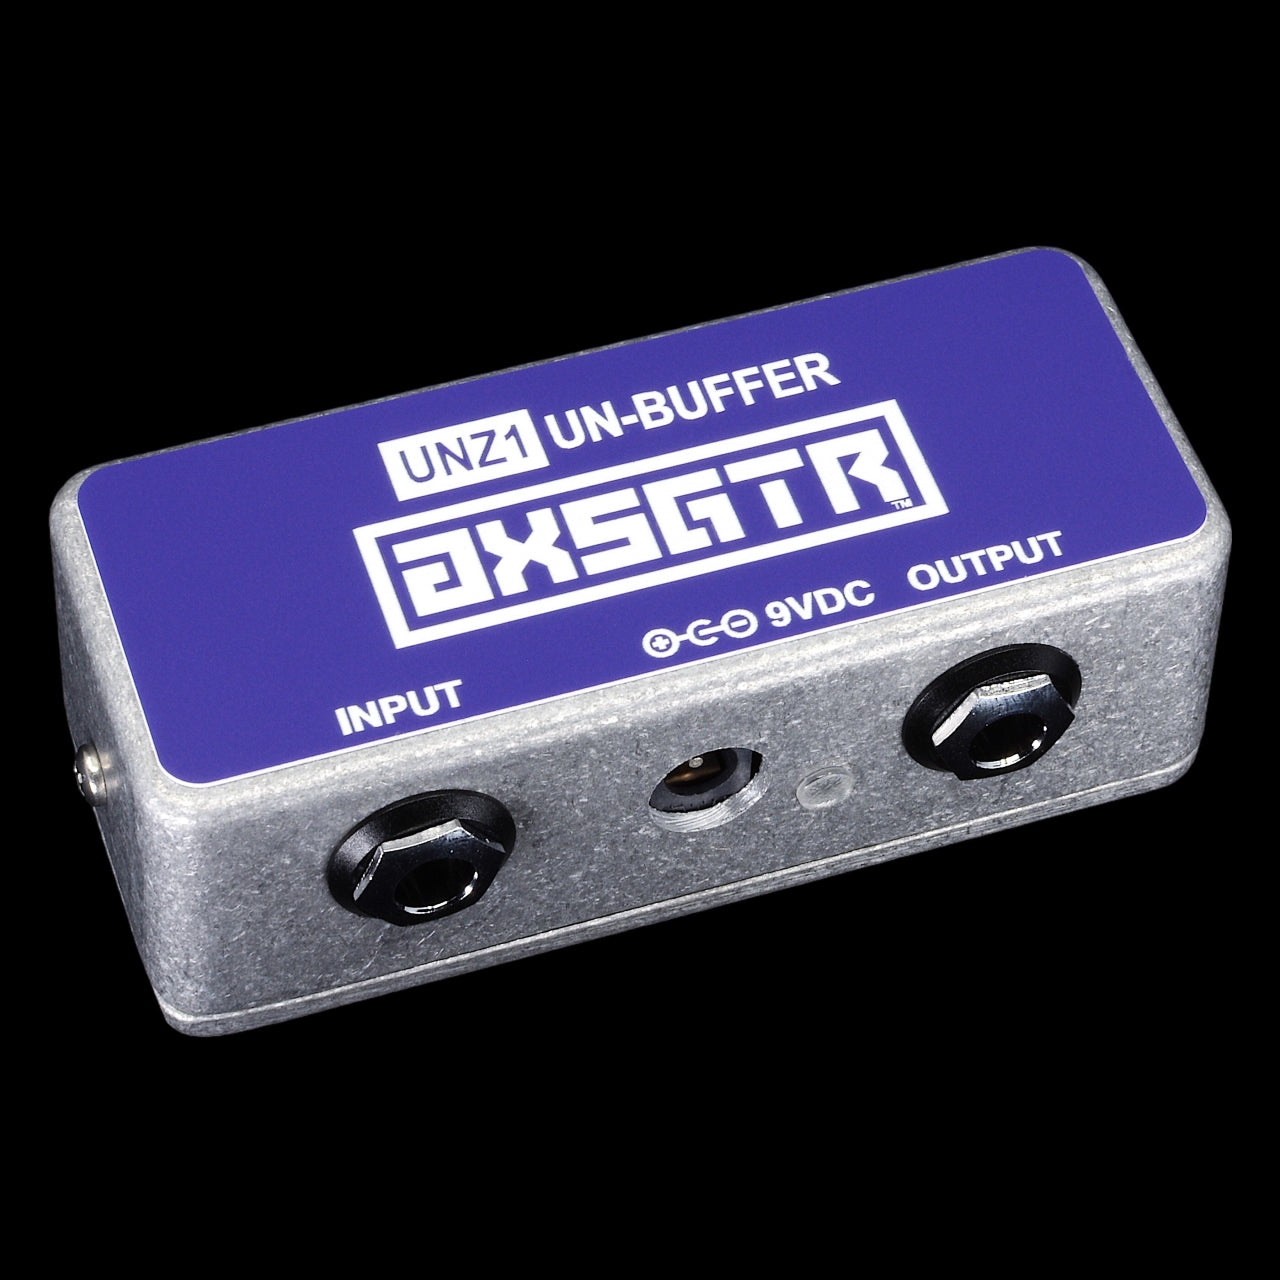 axsgtr axess electronics unz1 un-buffer unbuffer guitar effect pedal pedalboard purple